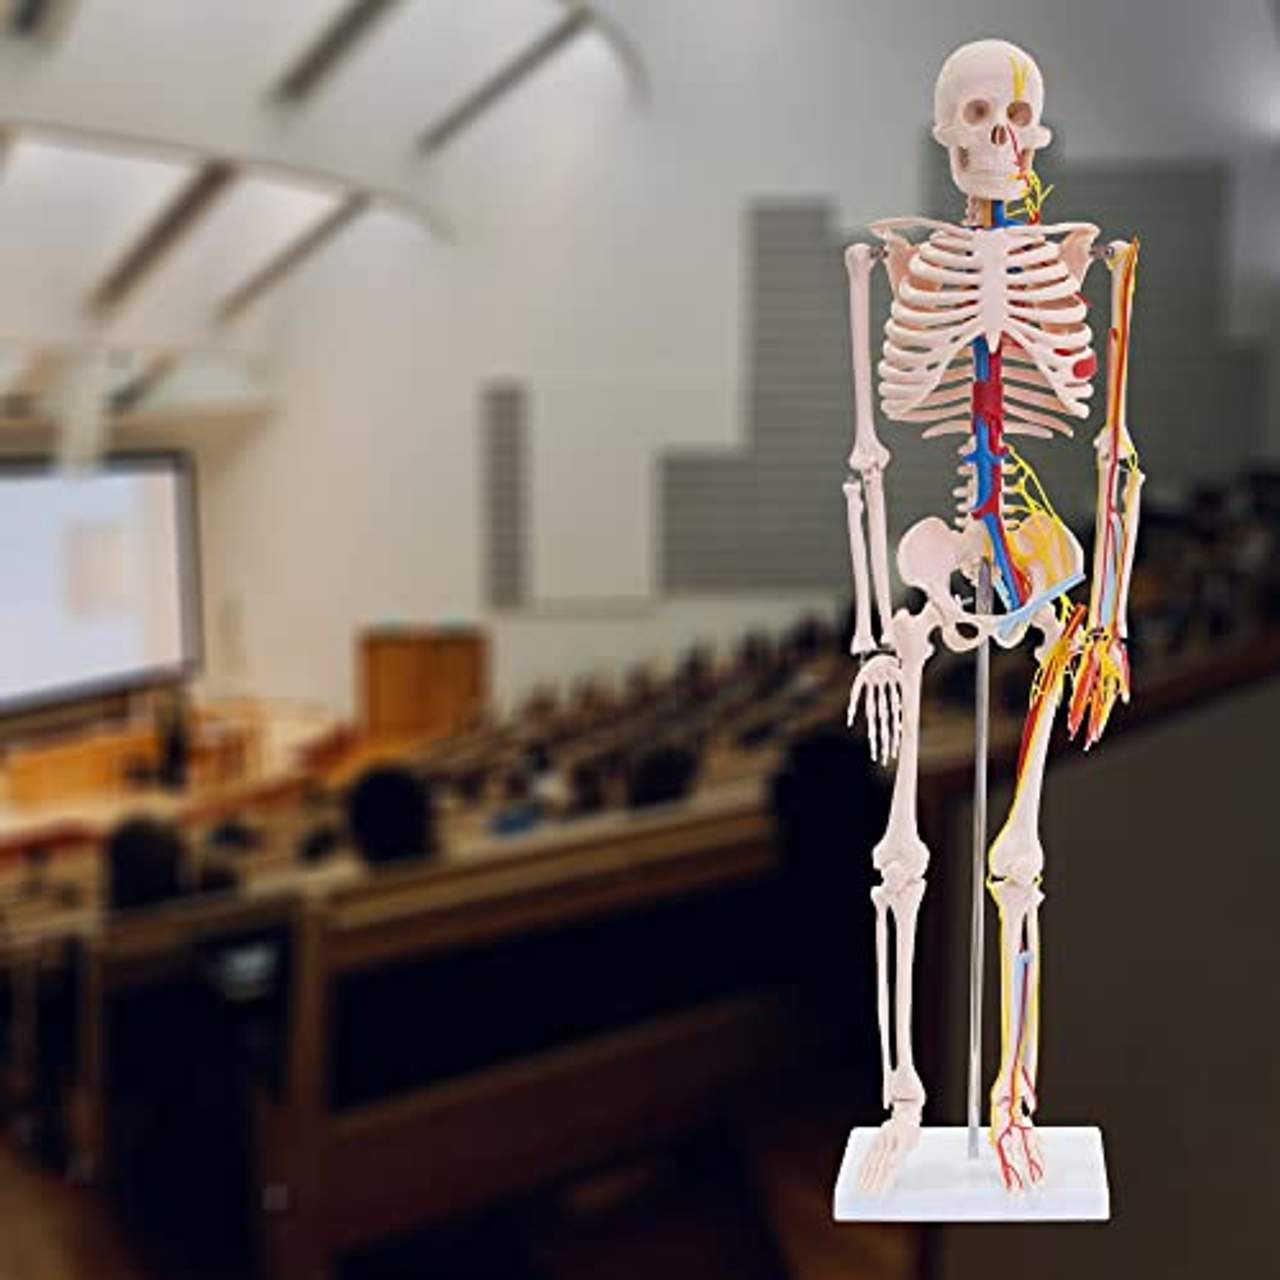 MedMod Skelett 87cm mit Nerven